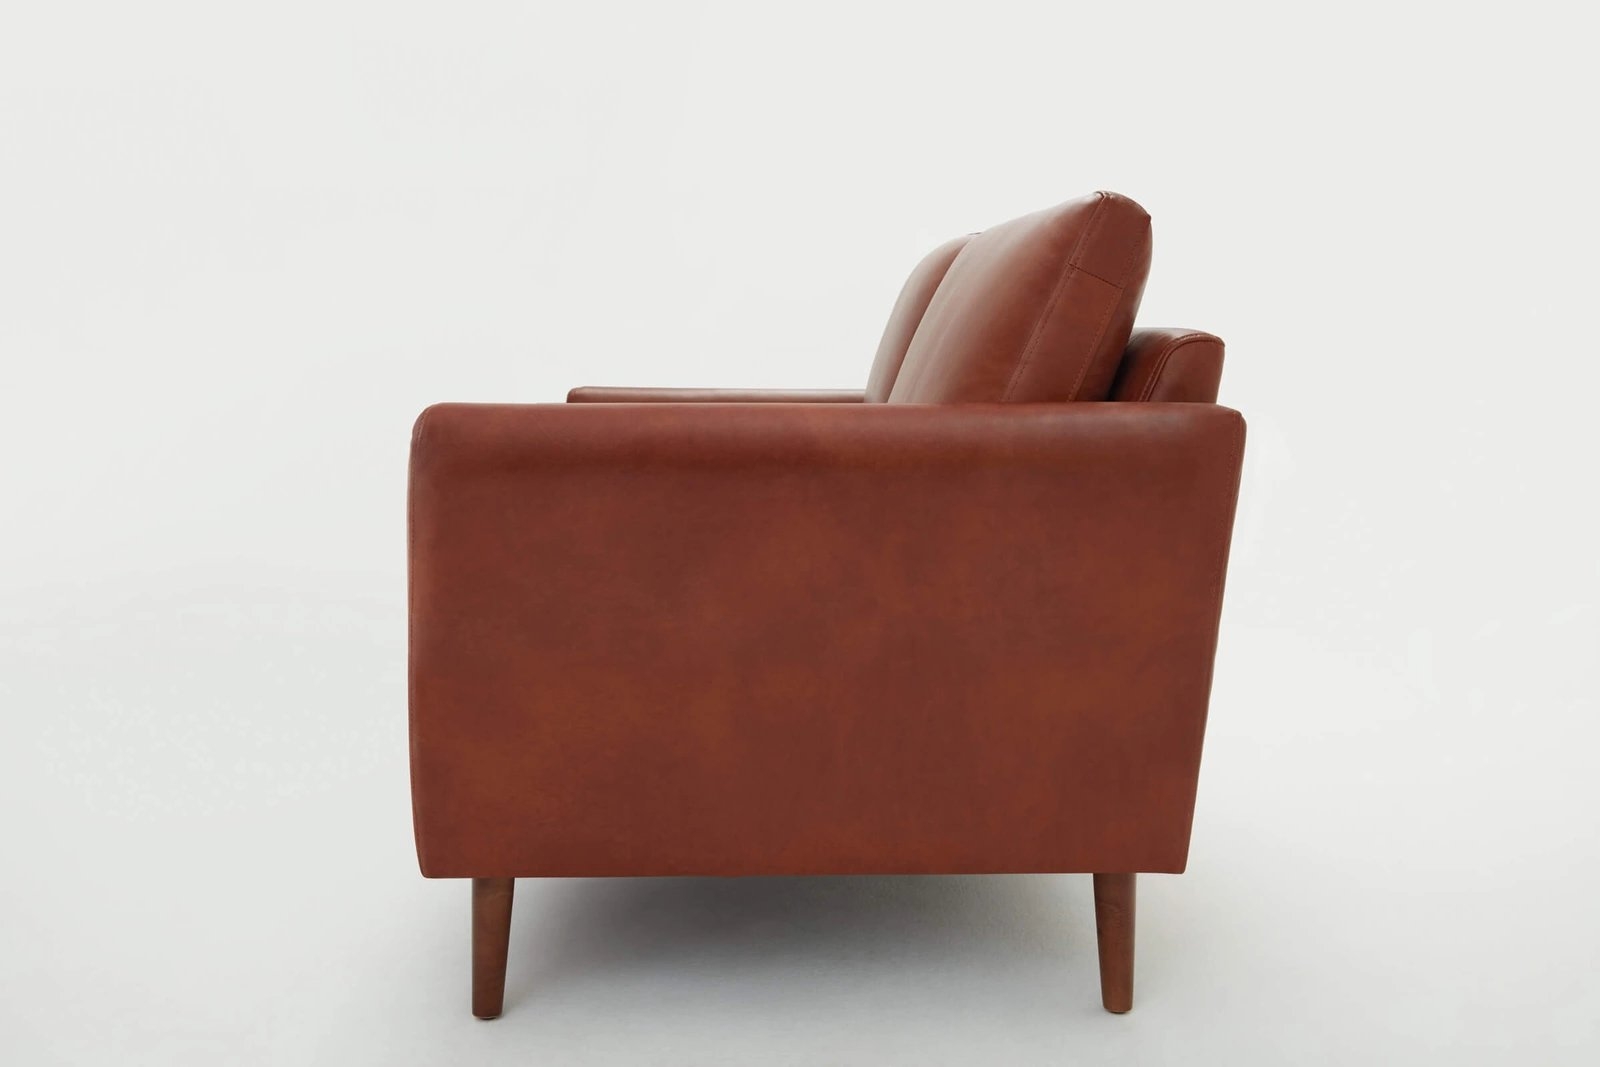 Nomad Leather Sofa - Chestnut - Image 3